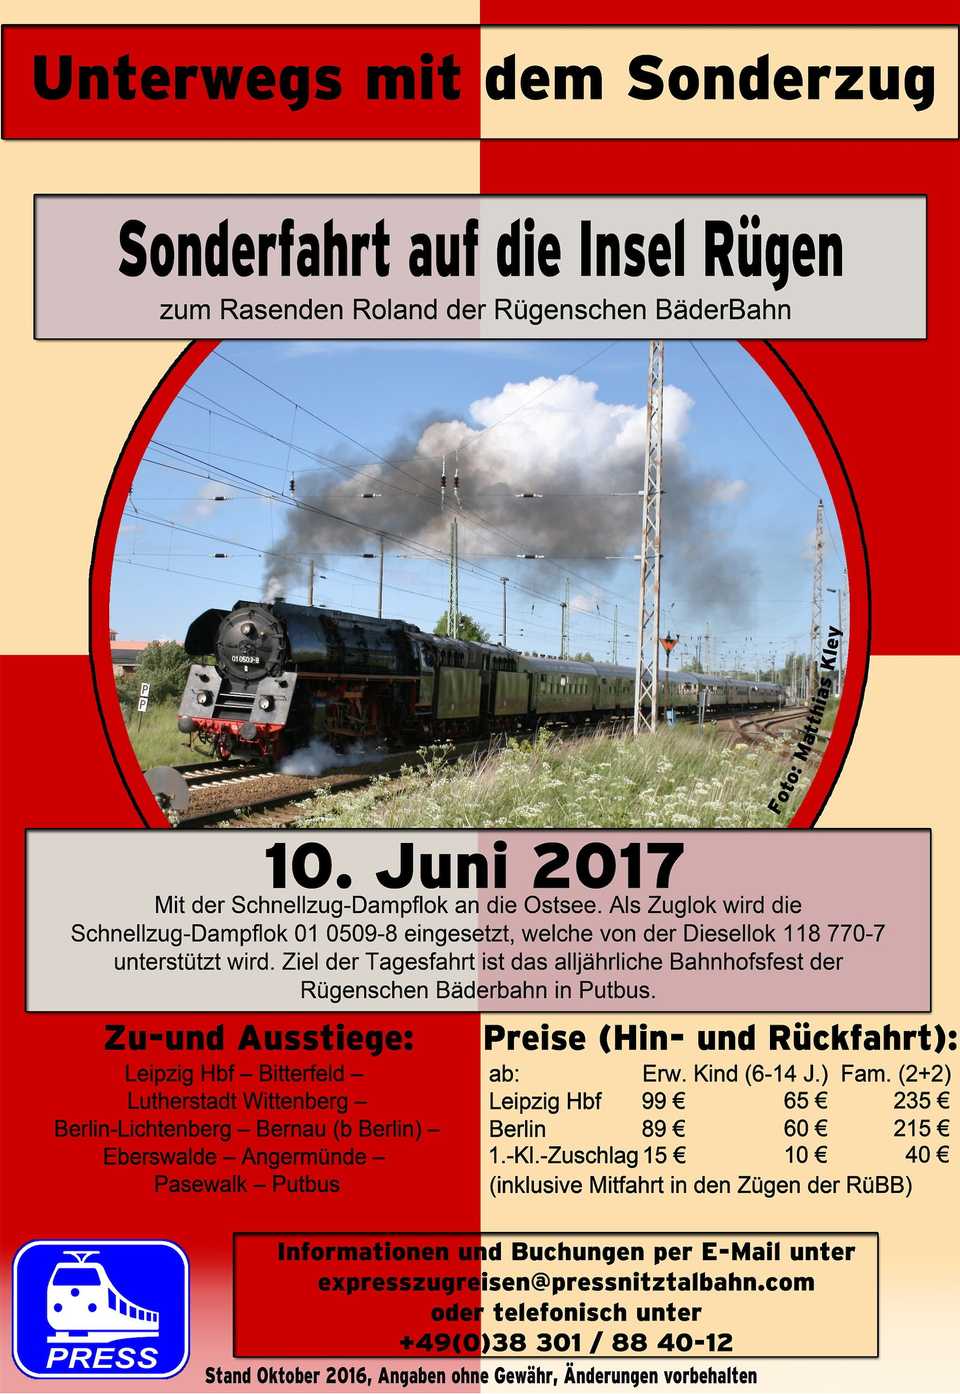 Veranstaltungsankündigung: Sonderfahrt auf die Insel Rügen, 10. Juni 2017